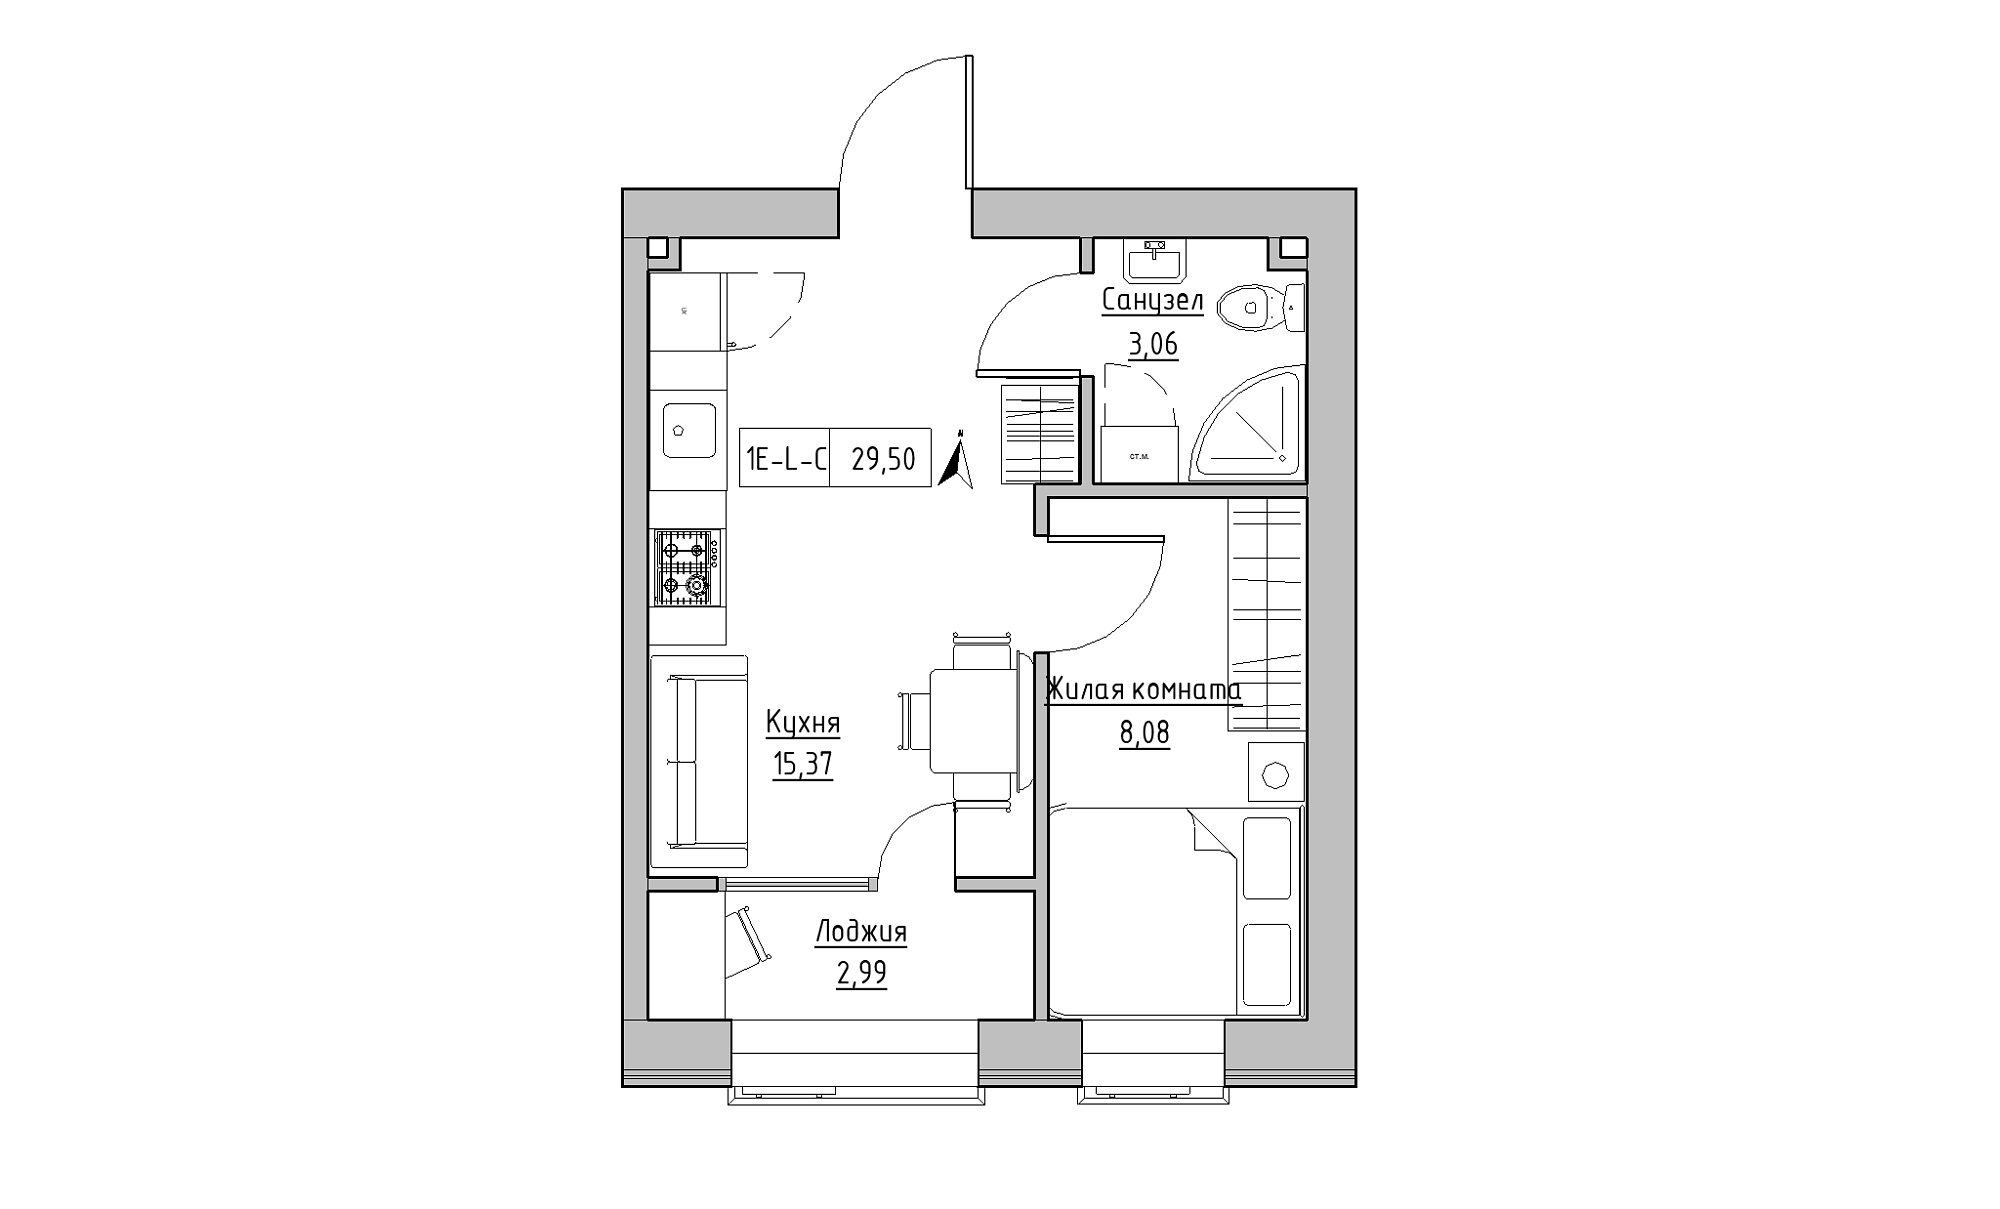 Планировка 1-к квартира площей 29.5м2, KS-016-04/0006.